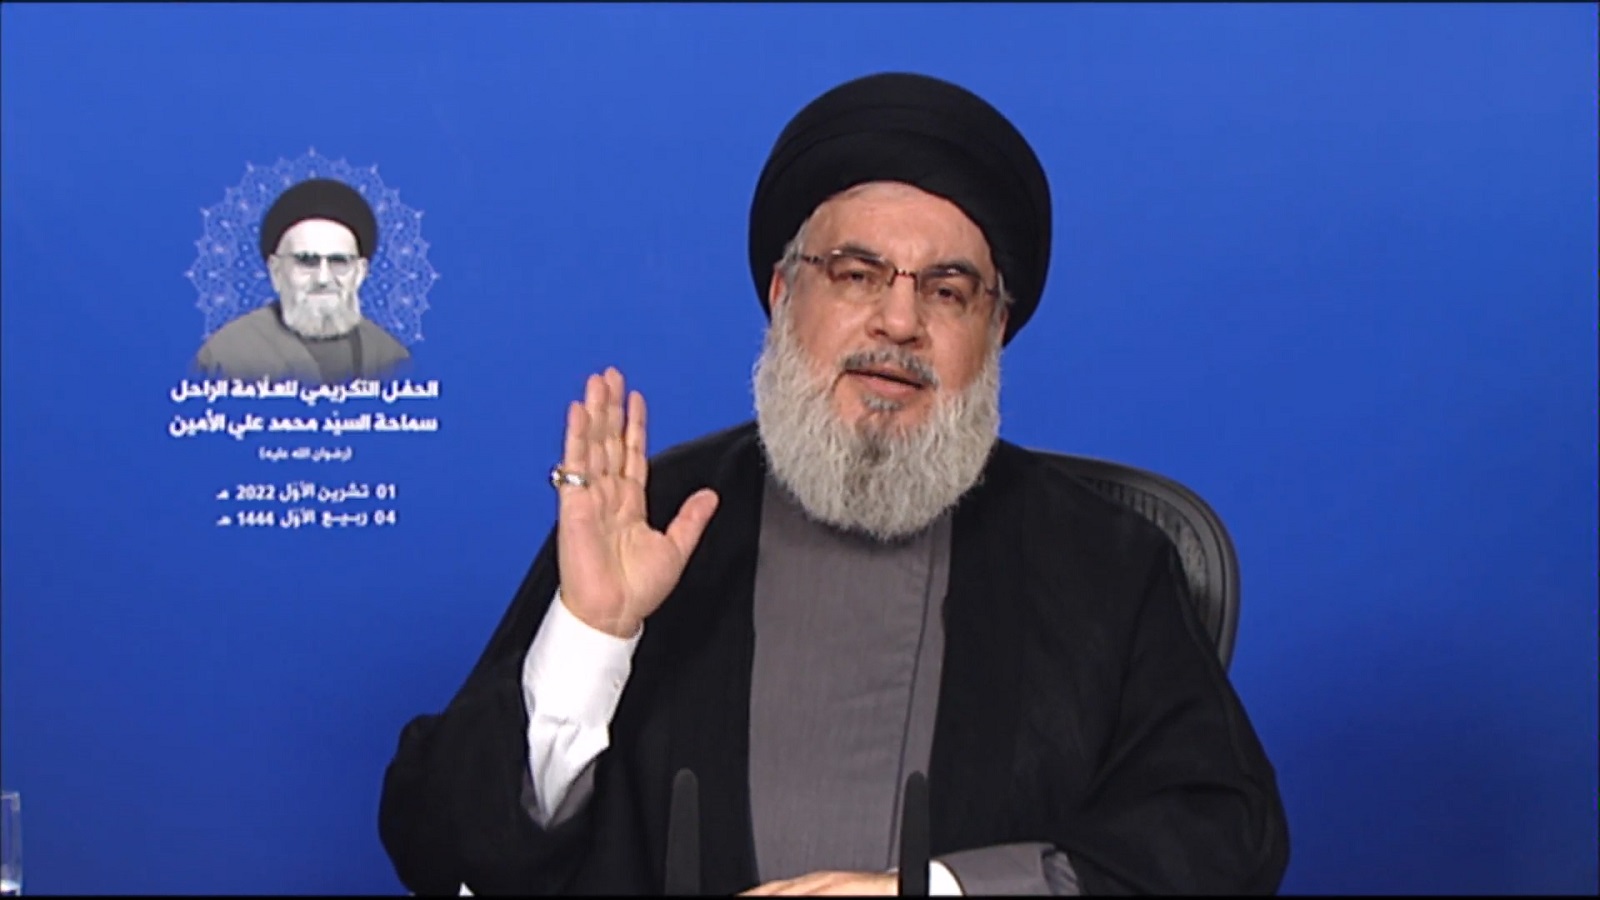 ثمار اتفاق الترسيم داخلياً وخارجياً بسلّة حزب الله؟